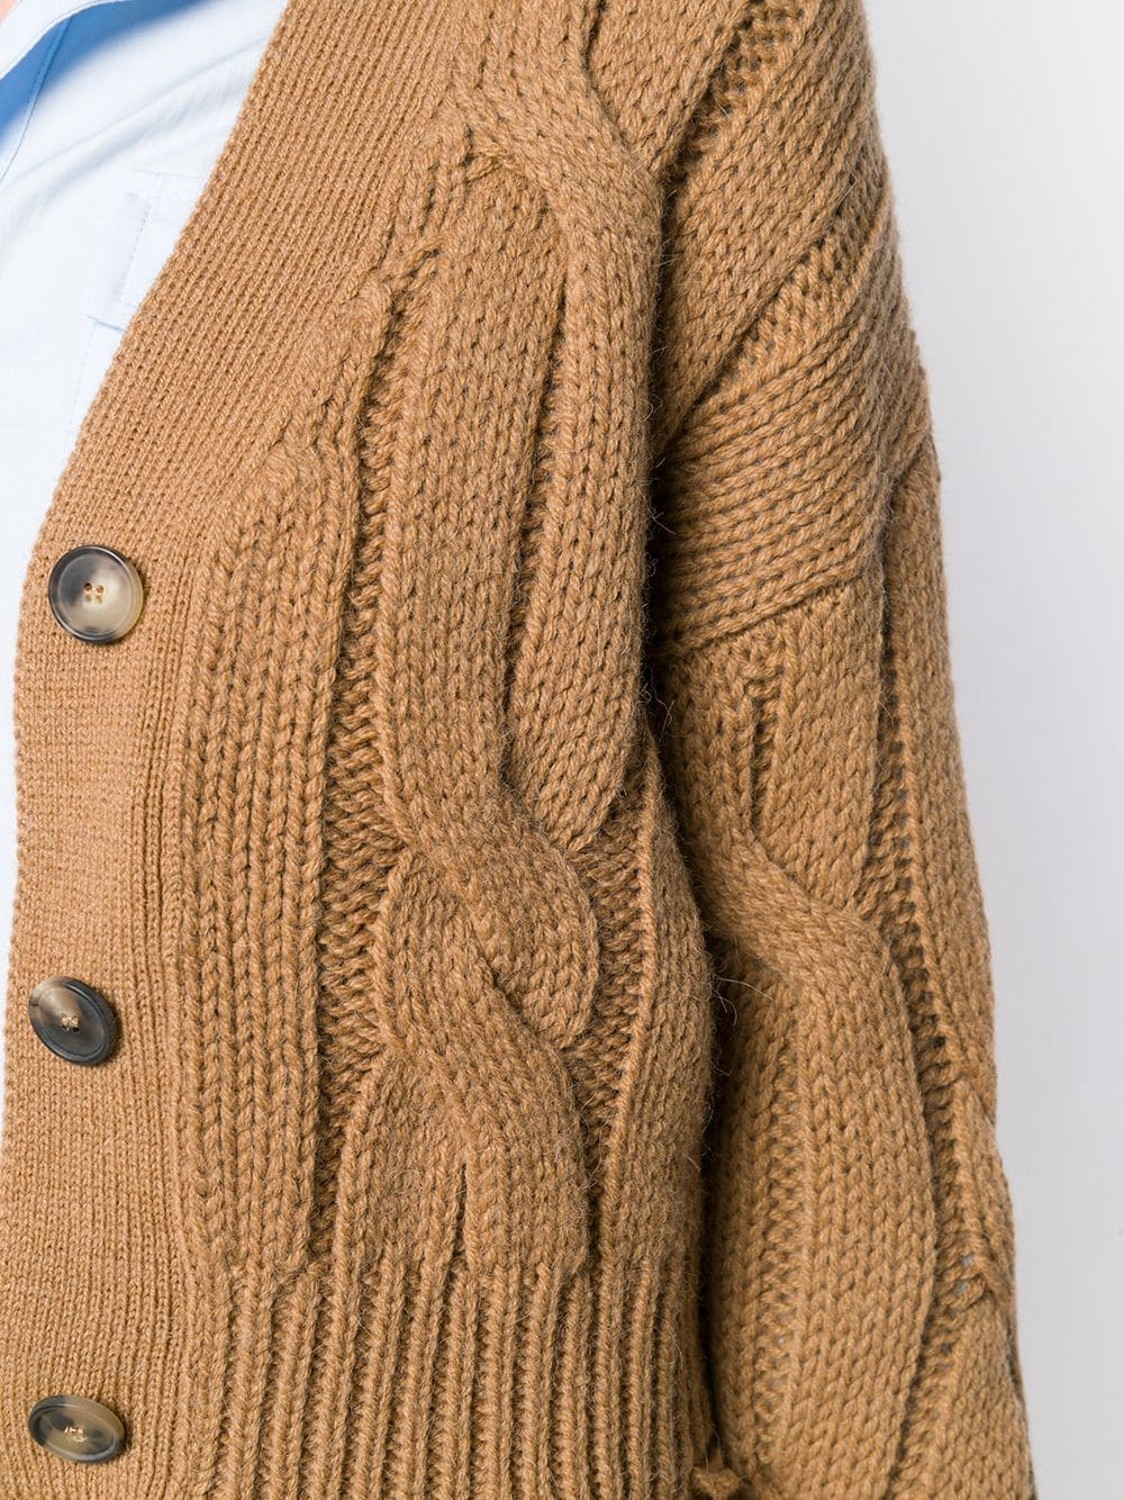 shop Tela  Maglie: Cardigan Tela, modello corto, a trecce davanti e dietro, scollo a V, maniche lunghe.

Composizione: 45% fibra acrilica, 37% alpaca, 18% lana vergine. number 1570